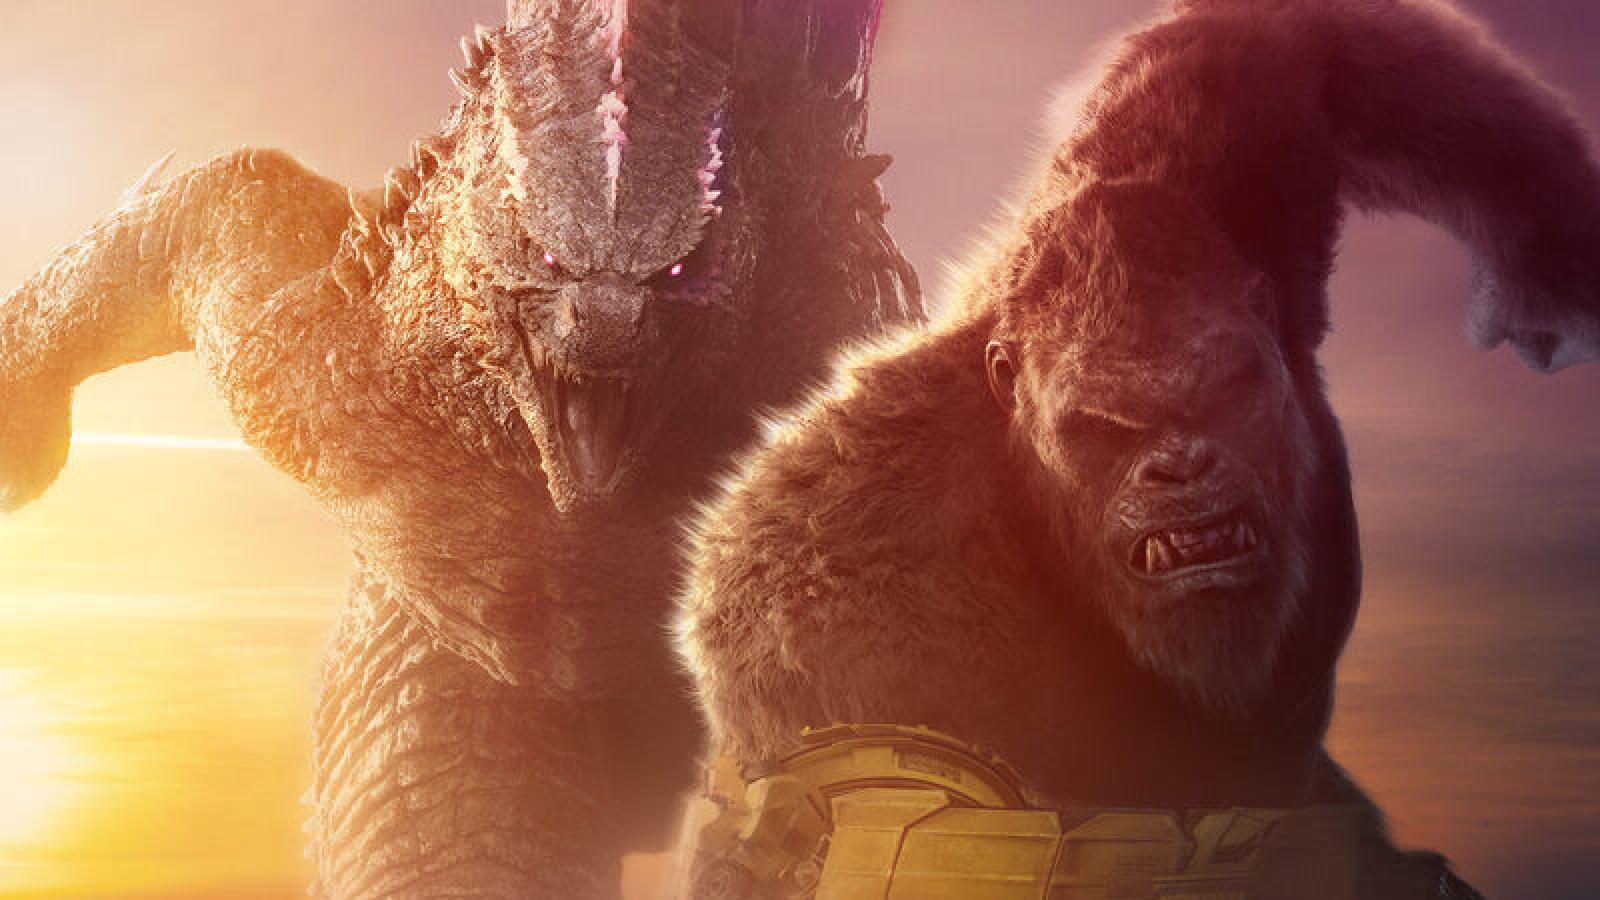 Godzillakong.jpg